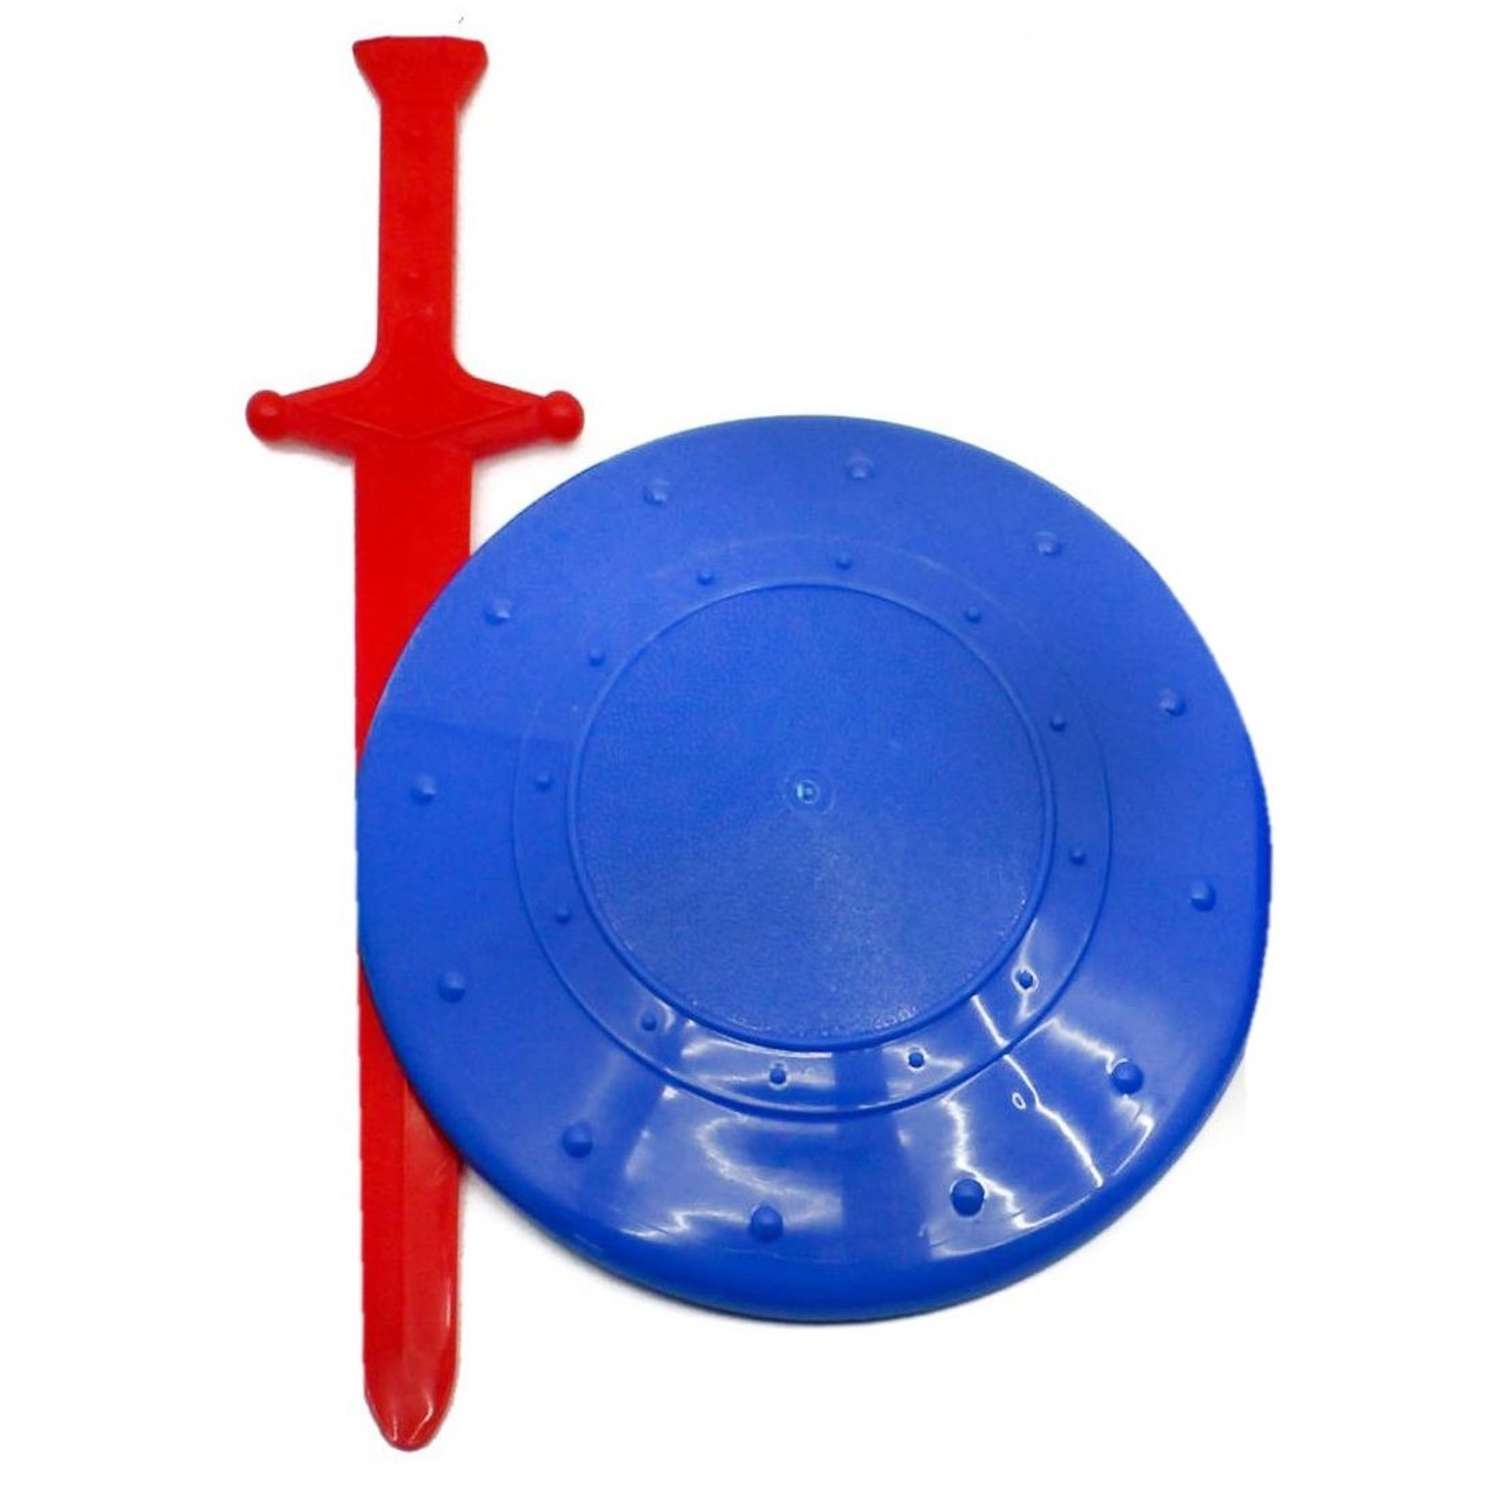 Игровой набор Maximus Щит и меч голубой/красный - фото 1